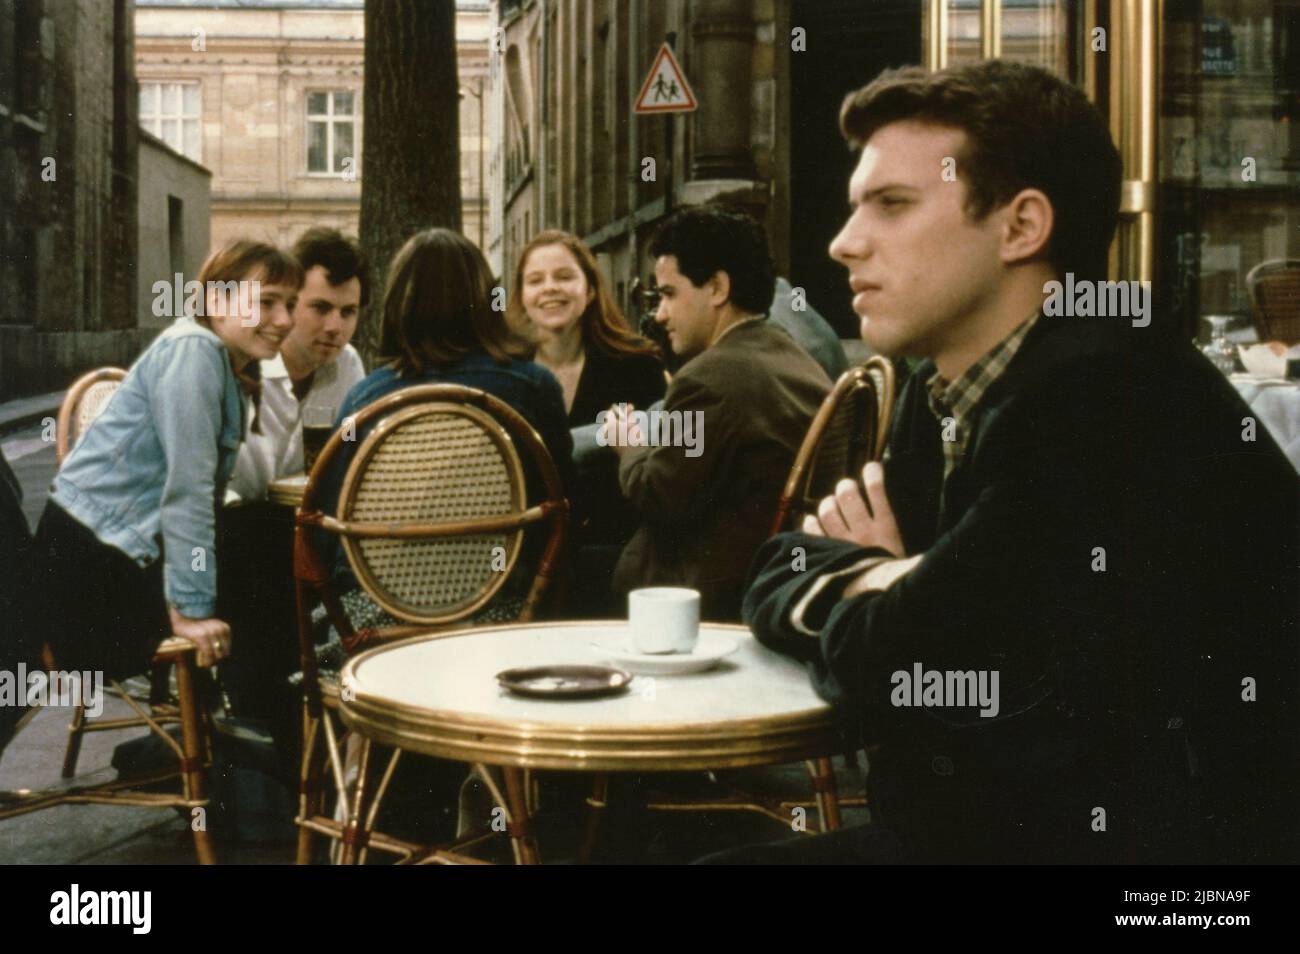 Attore francese Julien Collet nel film la storia del ragazzo che voleva essere baciato (l'histoire du garcon qui voulait qu'on l'embrasse), Francia 1994 Foto Stock